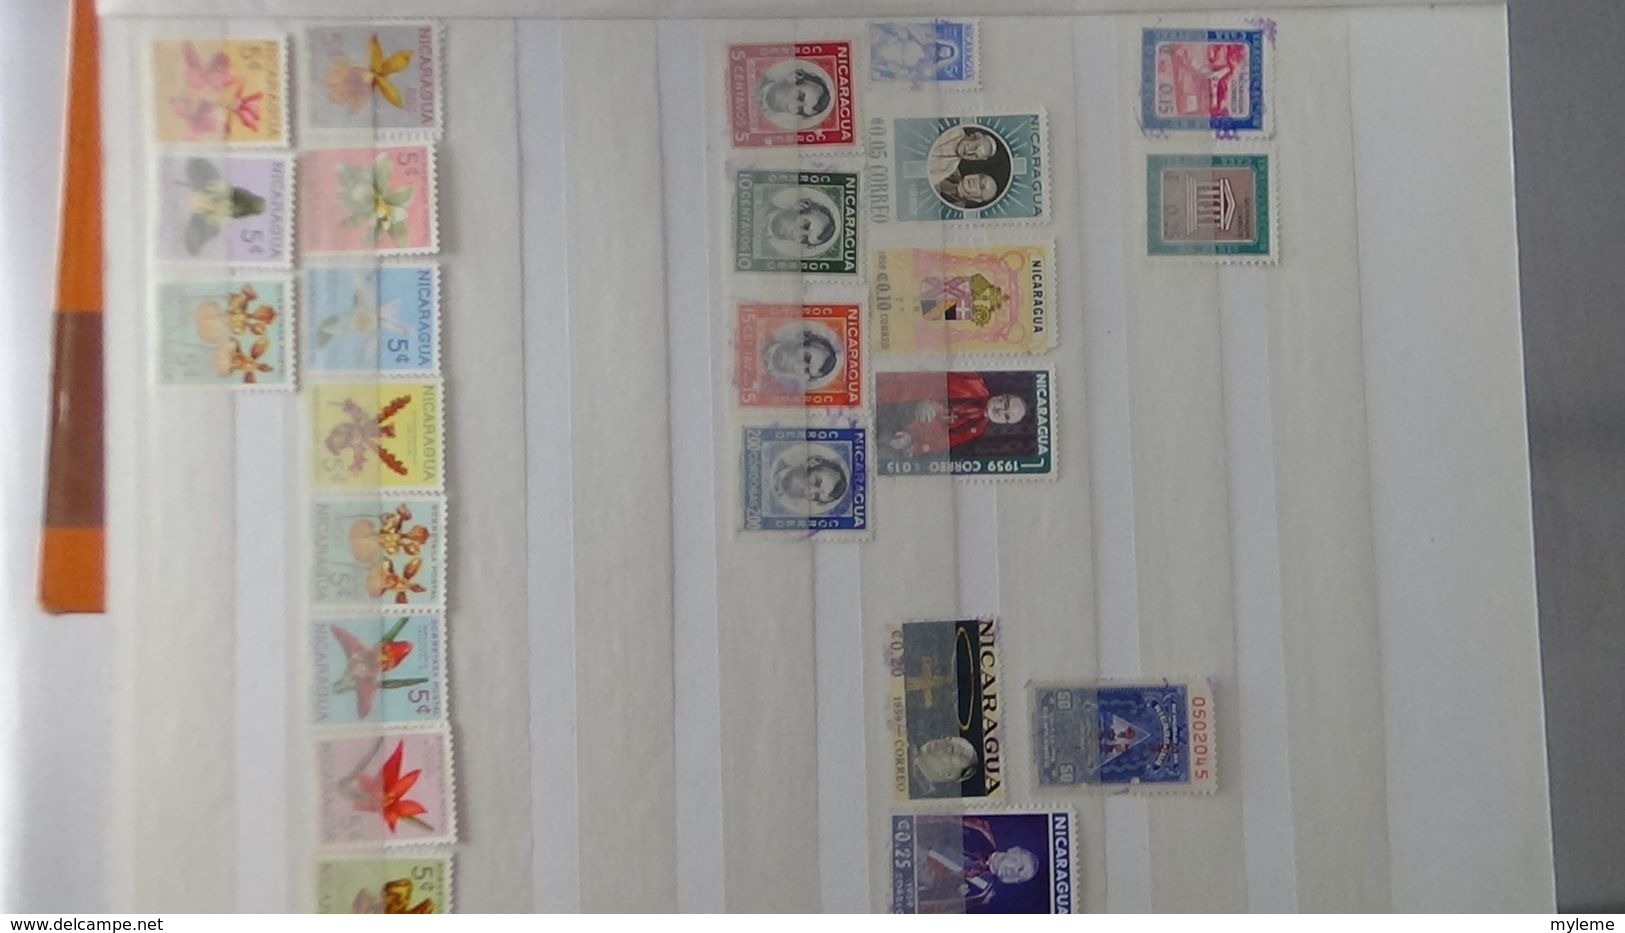 H6 Très belle collection du NICARAGUA dont timbres de  service. A saisir !!!